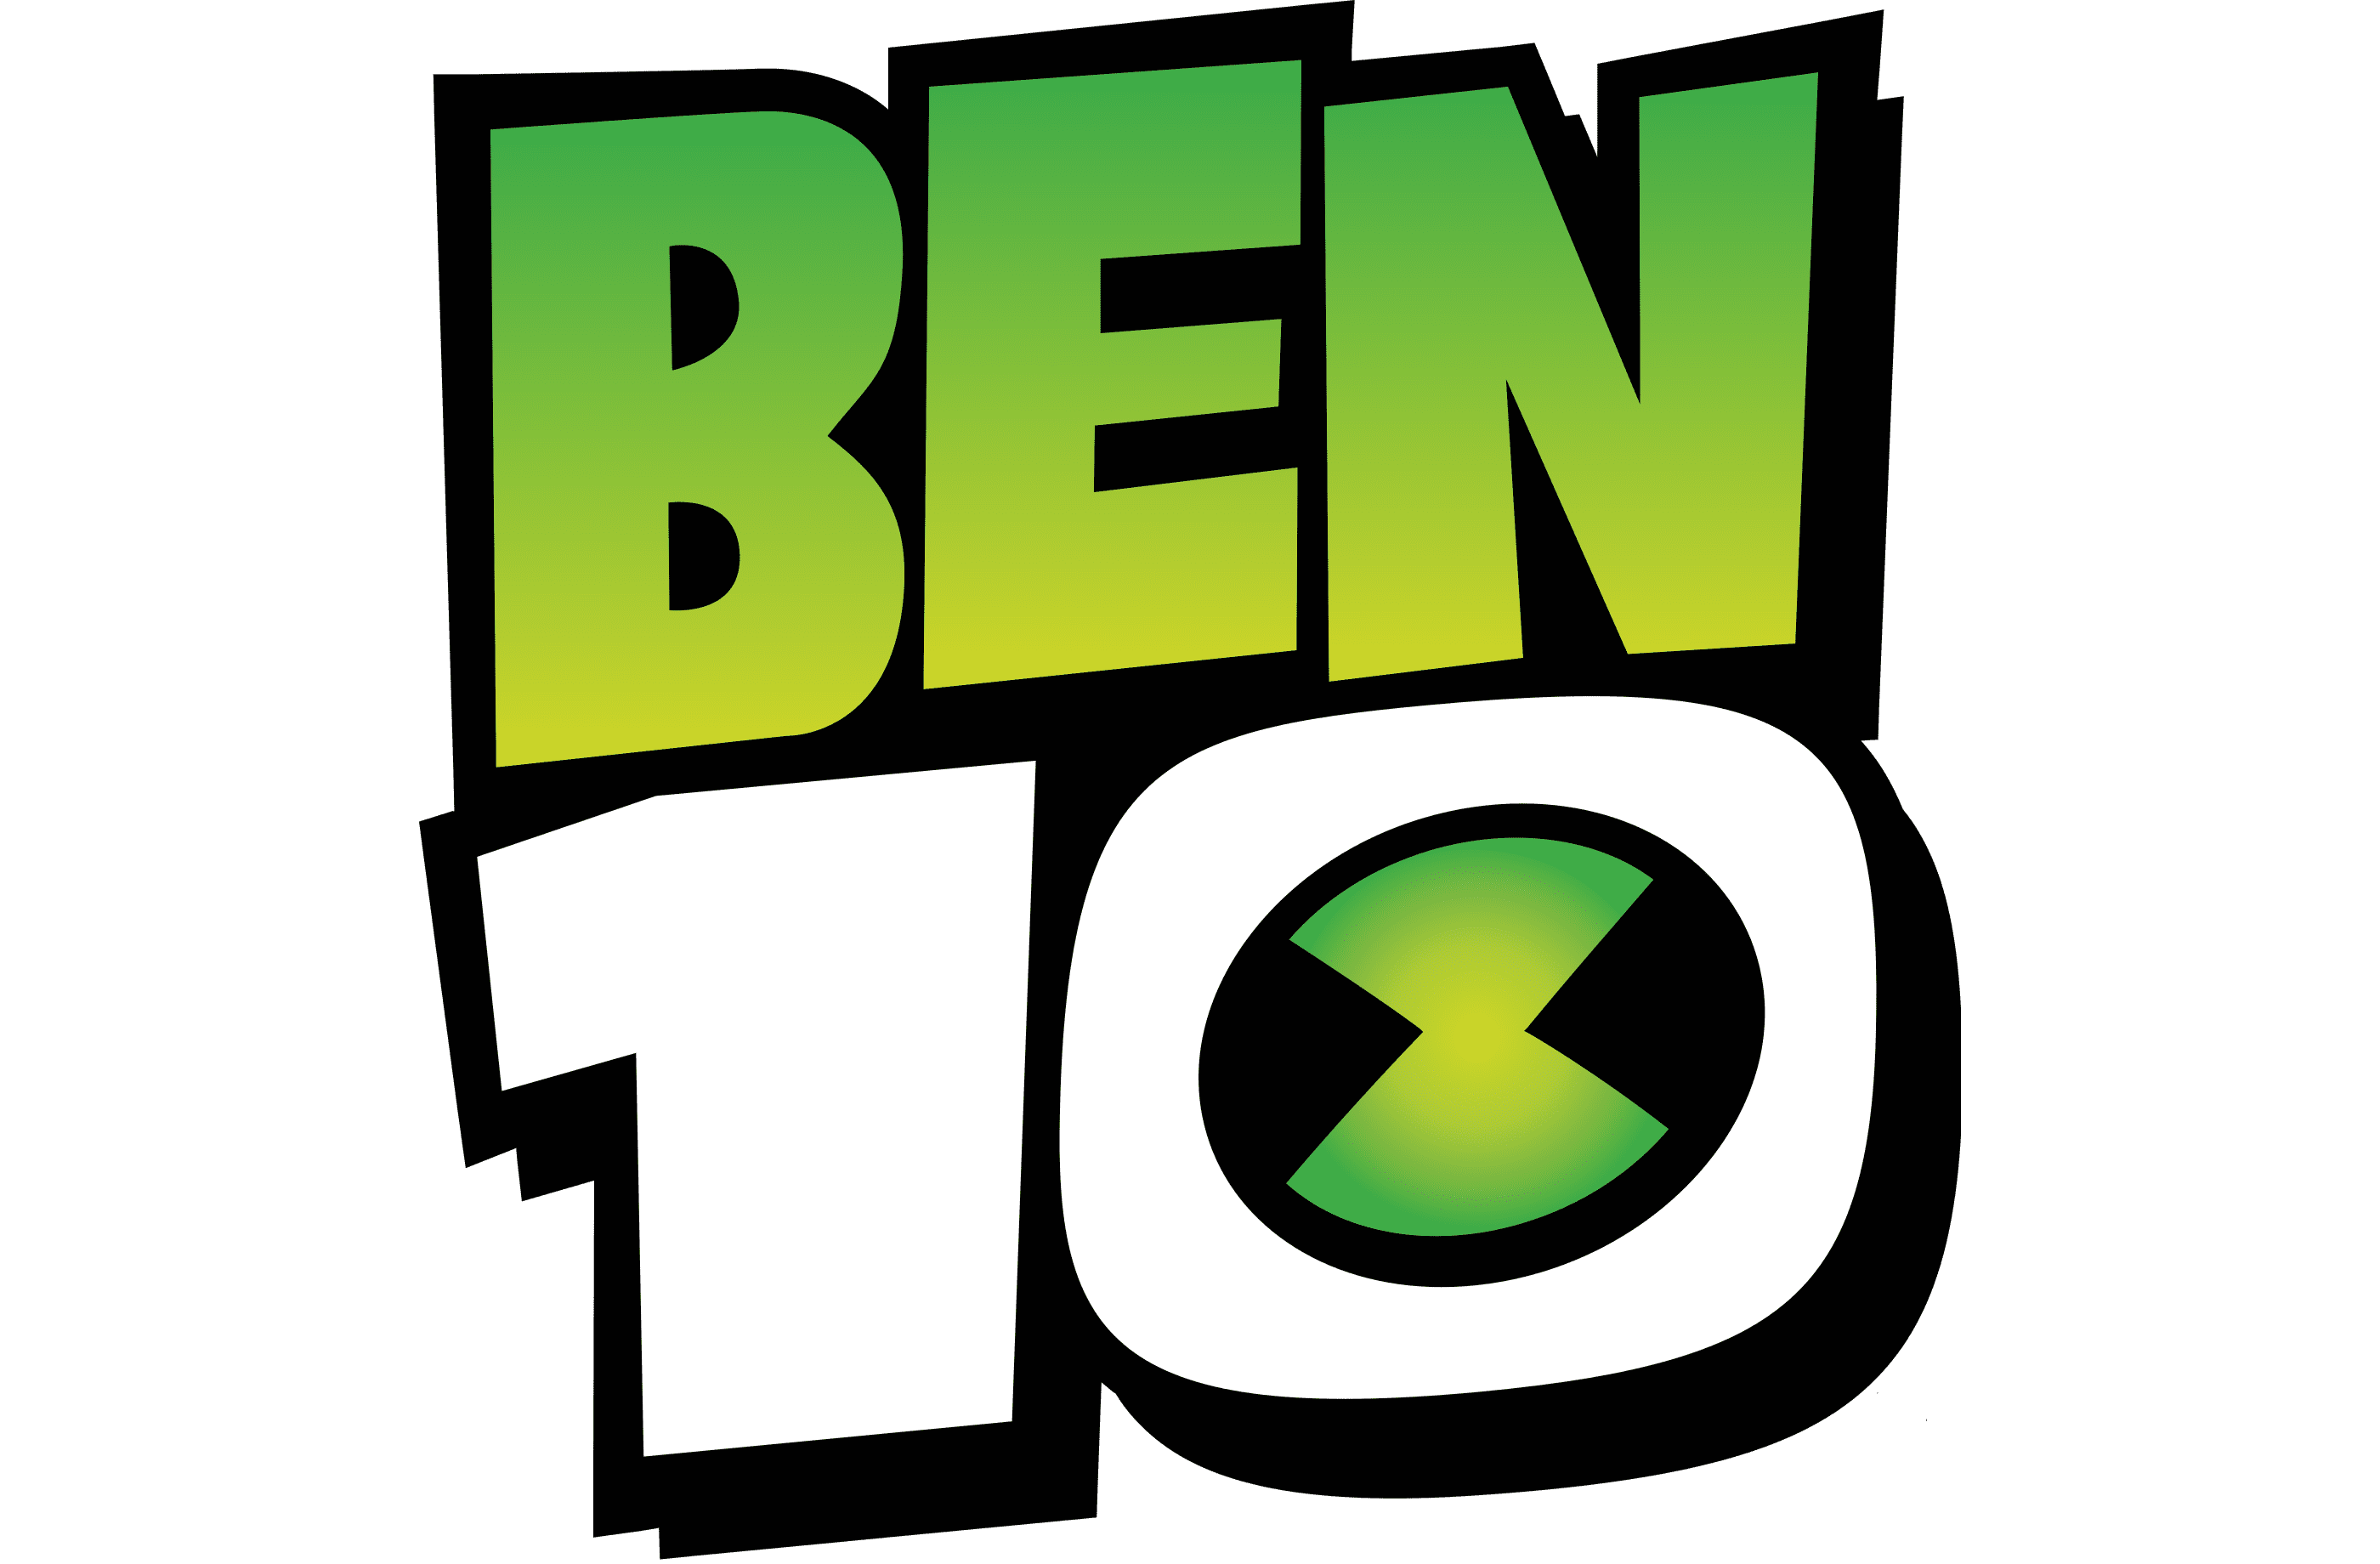 Ben-10-logo.png